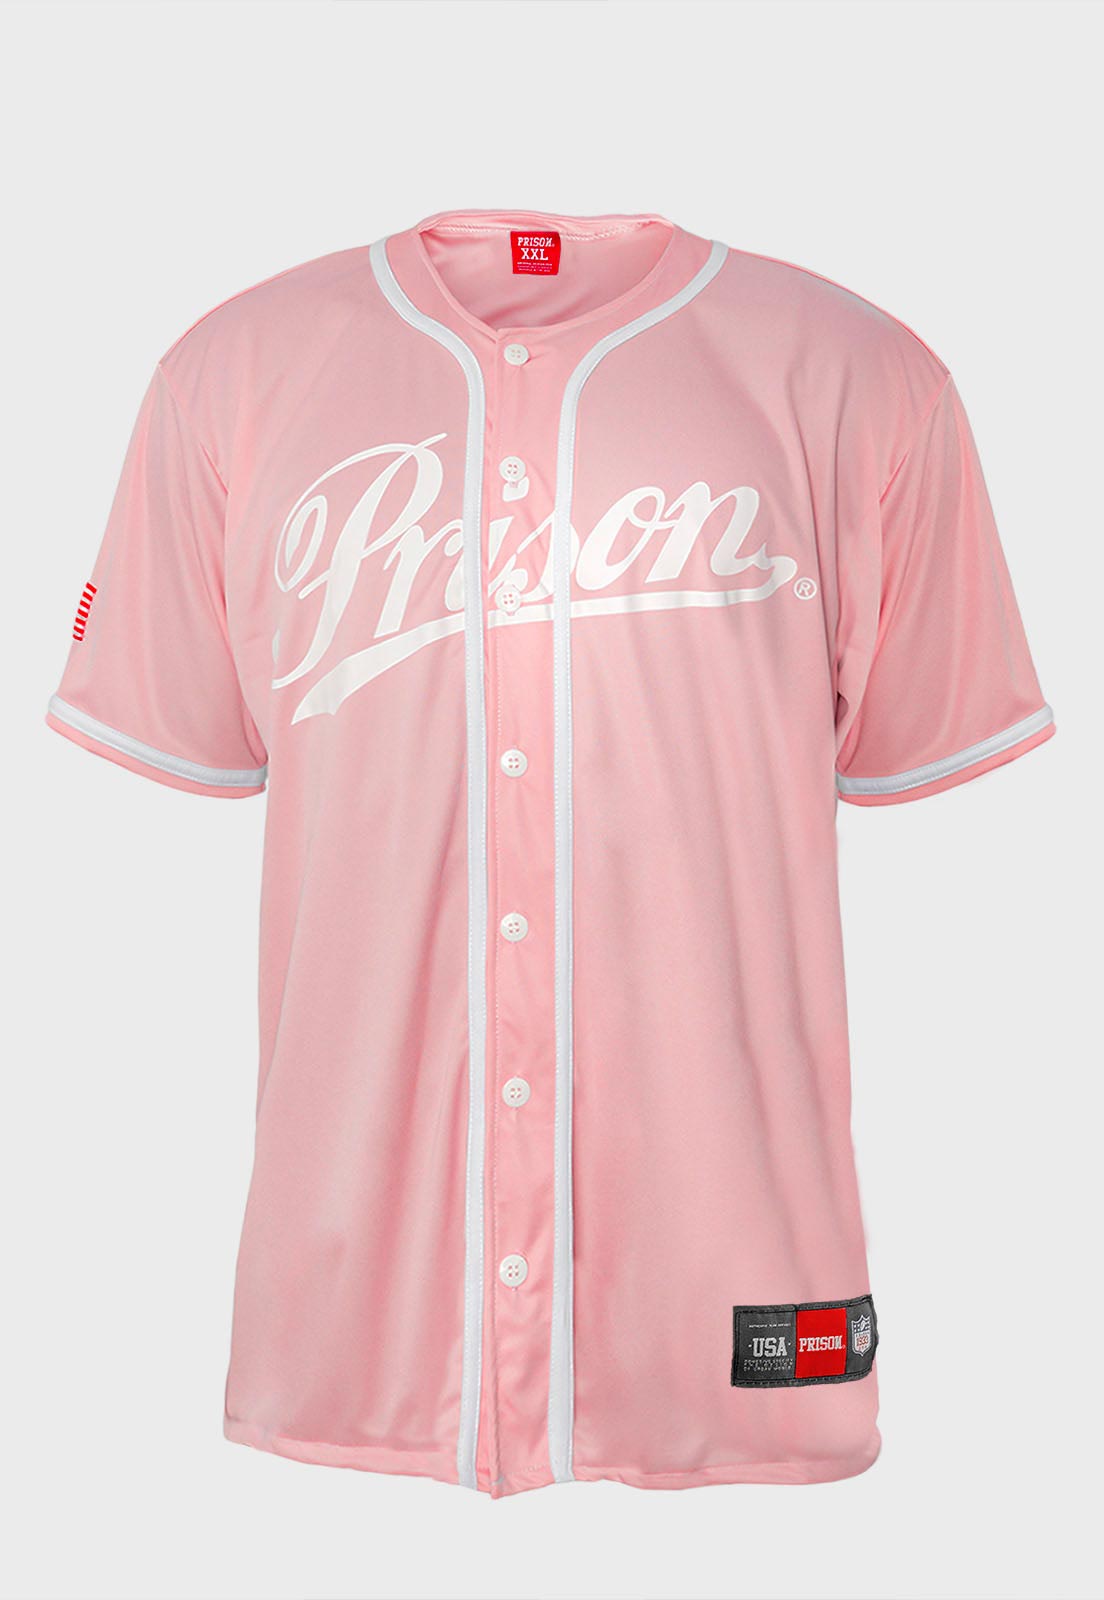 Camisa de Baseball League Prison Rosa